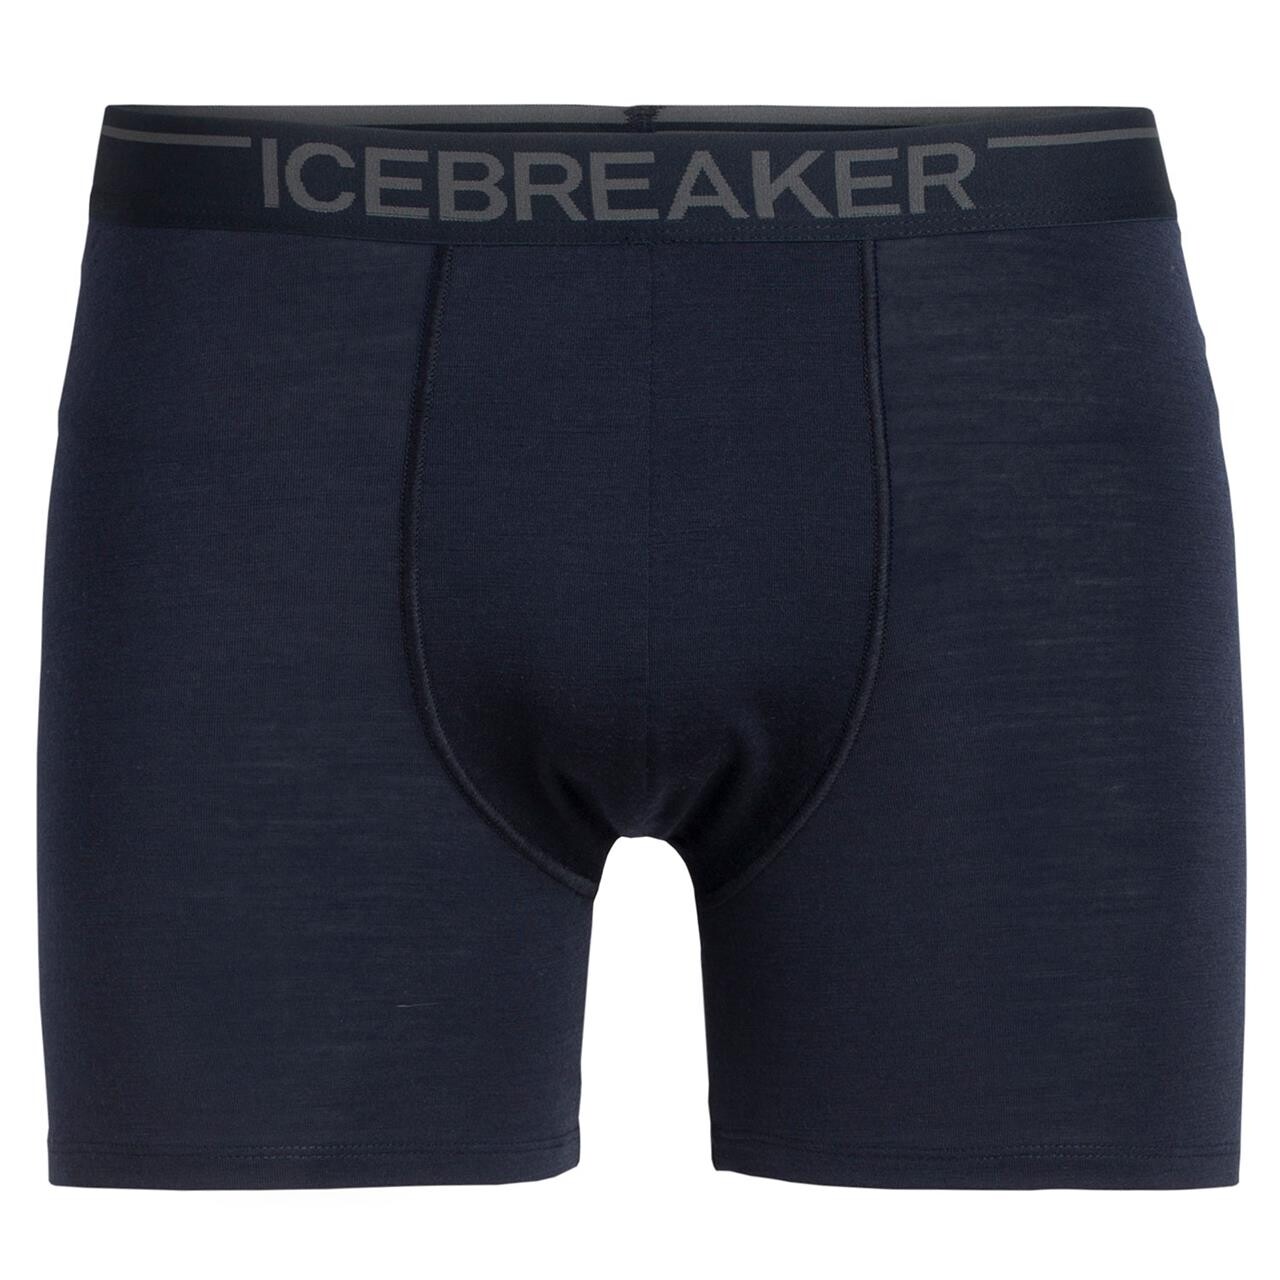 Se Icebreaker Mens Anatomica Boxers (Blå (MIDNIGHT NAVY) X-large) hos Friluftsland.dk